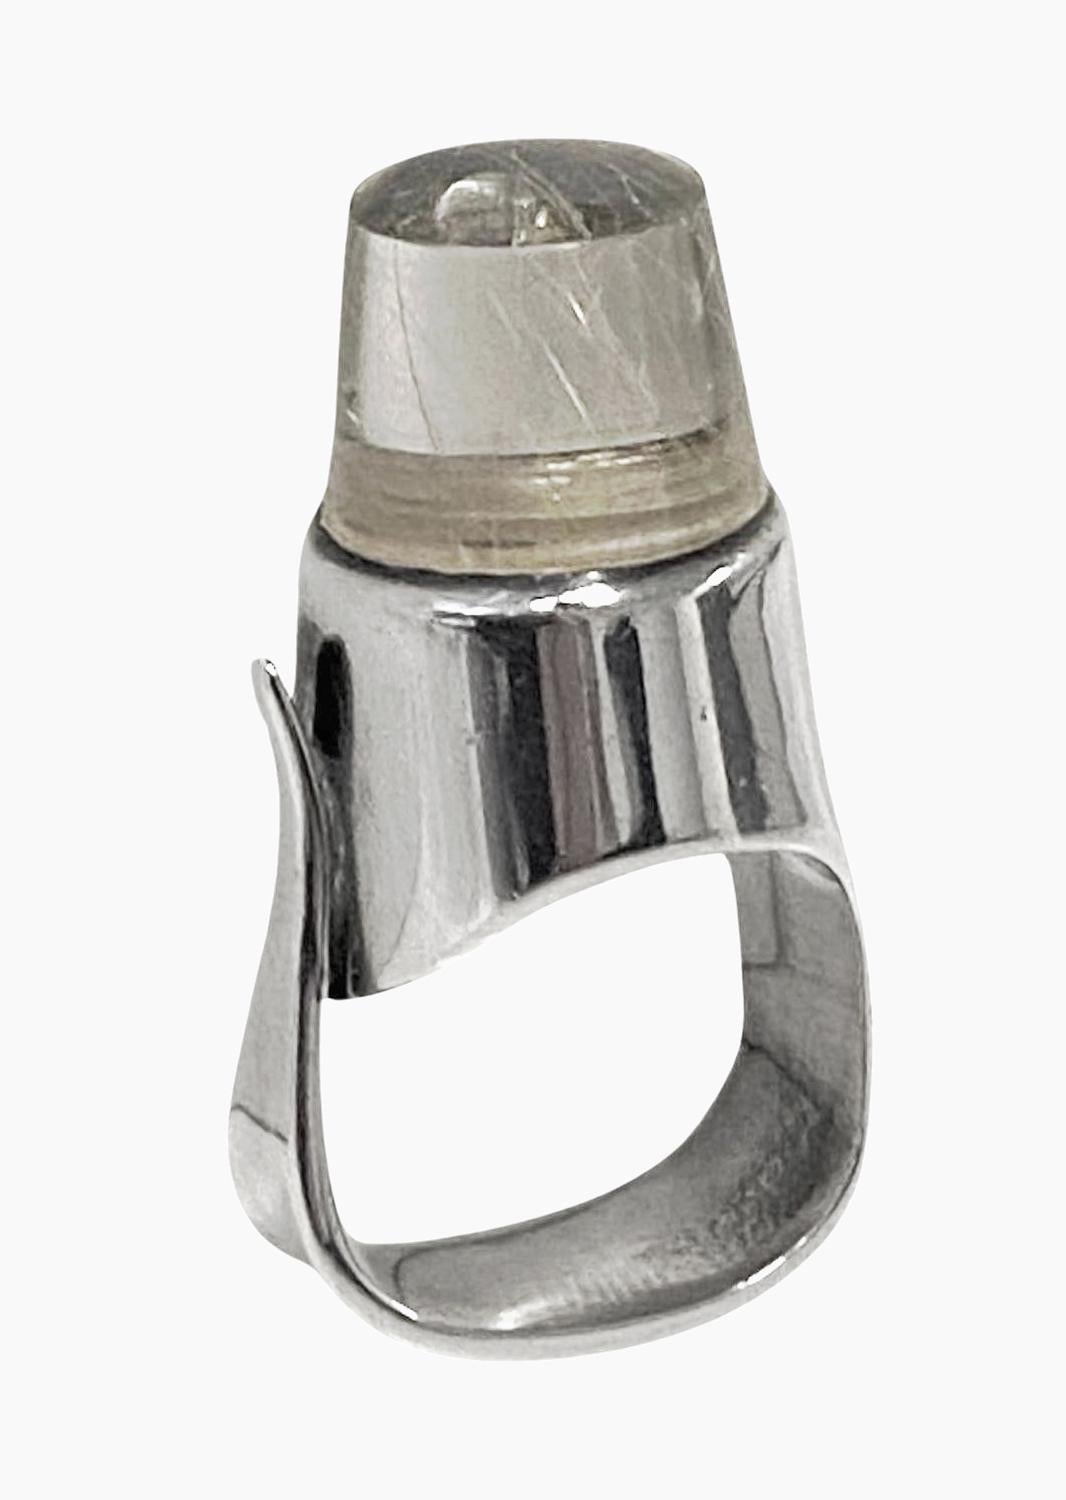 Georg Jensen Ring aus Sterlingsilber und Rutilquarz Nr. 151. Dieser ikonische Ring aus den 1960er Jahren in Form eines kugelförmigen Cabochons wurde von Vivianna Torun Buelow-Huebe entworfen. Ruthenischer Quarz mit hellen Goldfäden. Ausgezeichneter